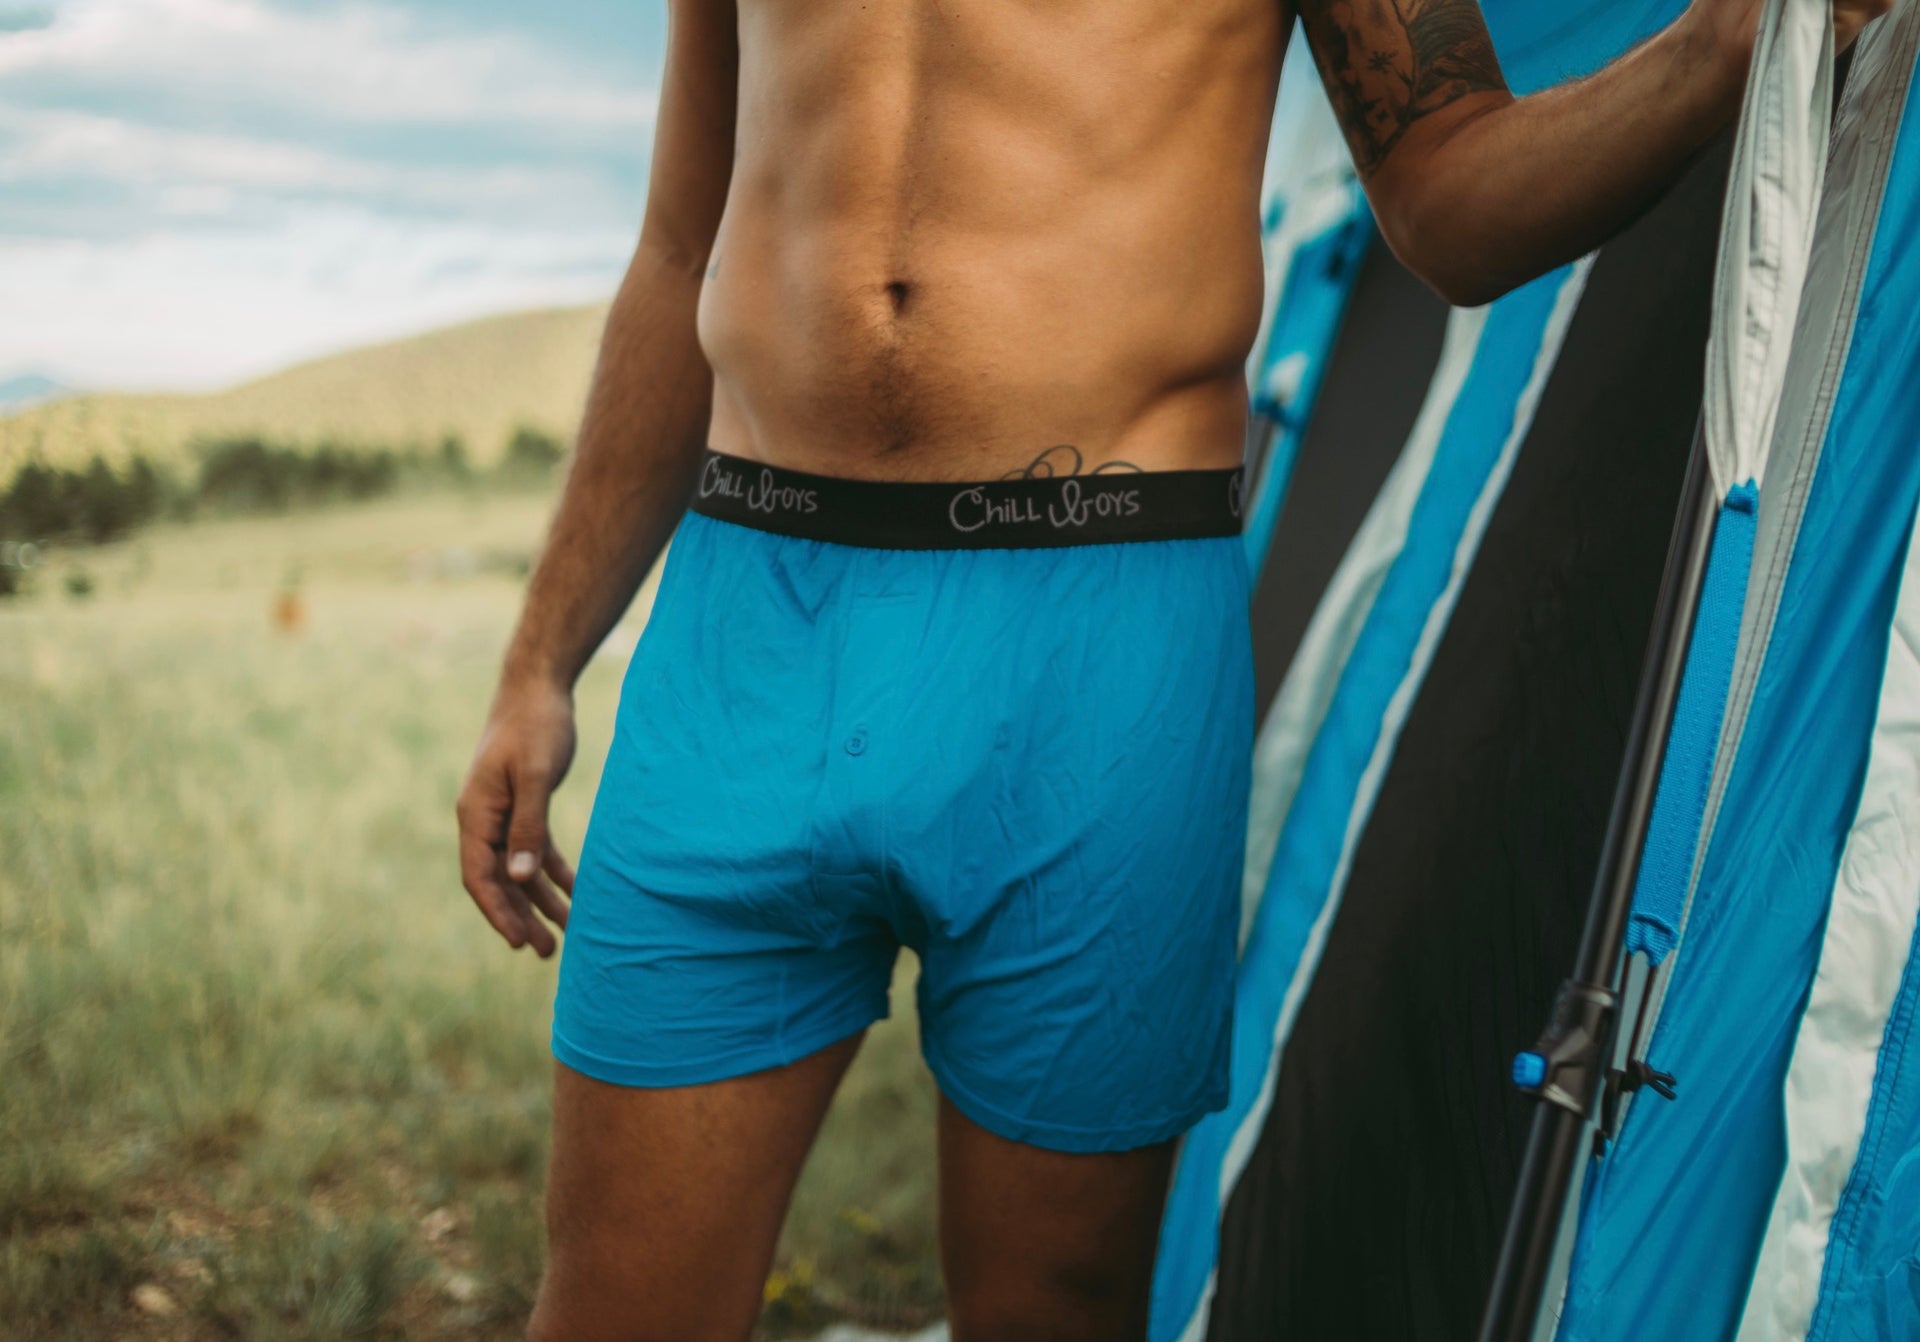 Custom best underwear for sweat men